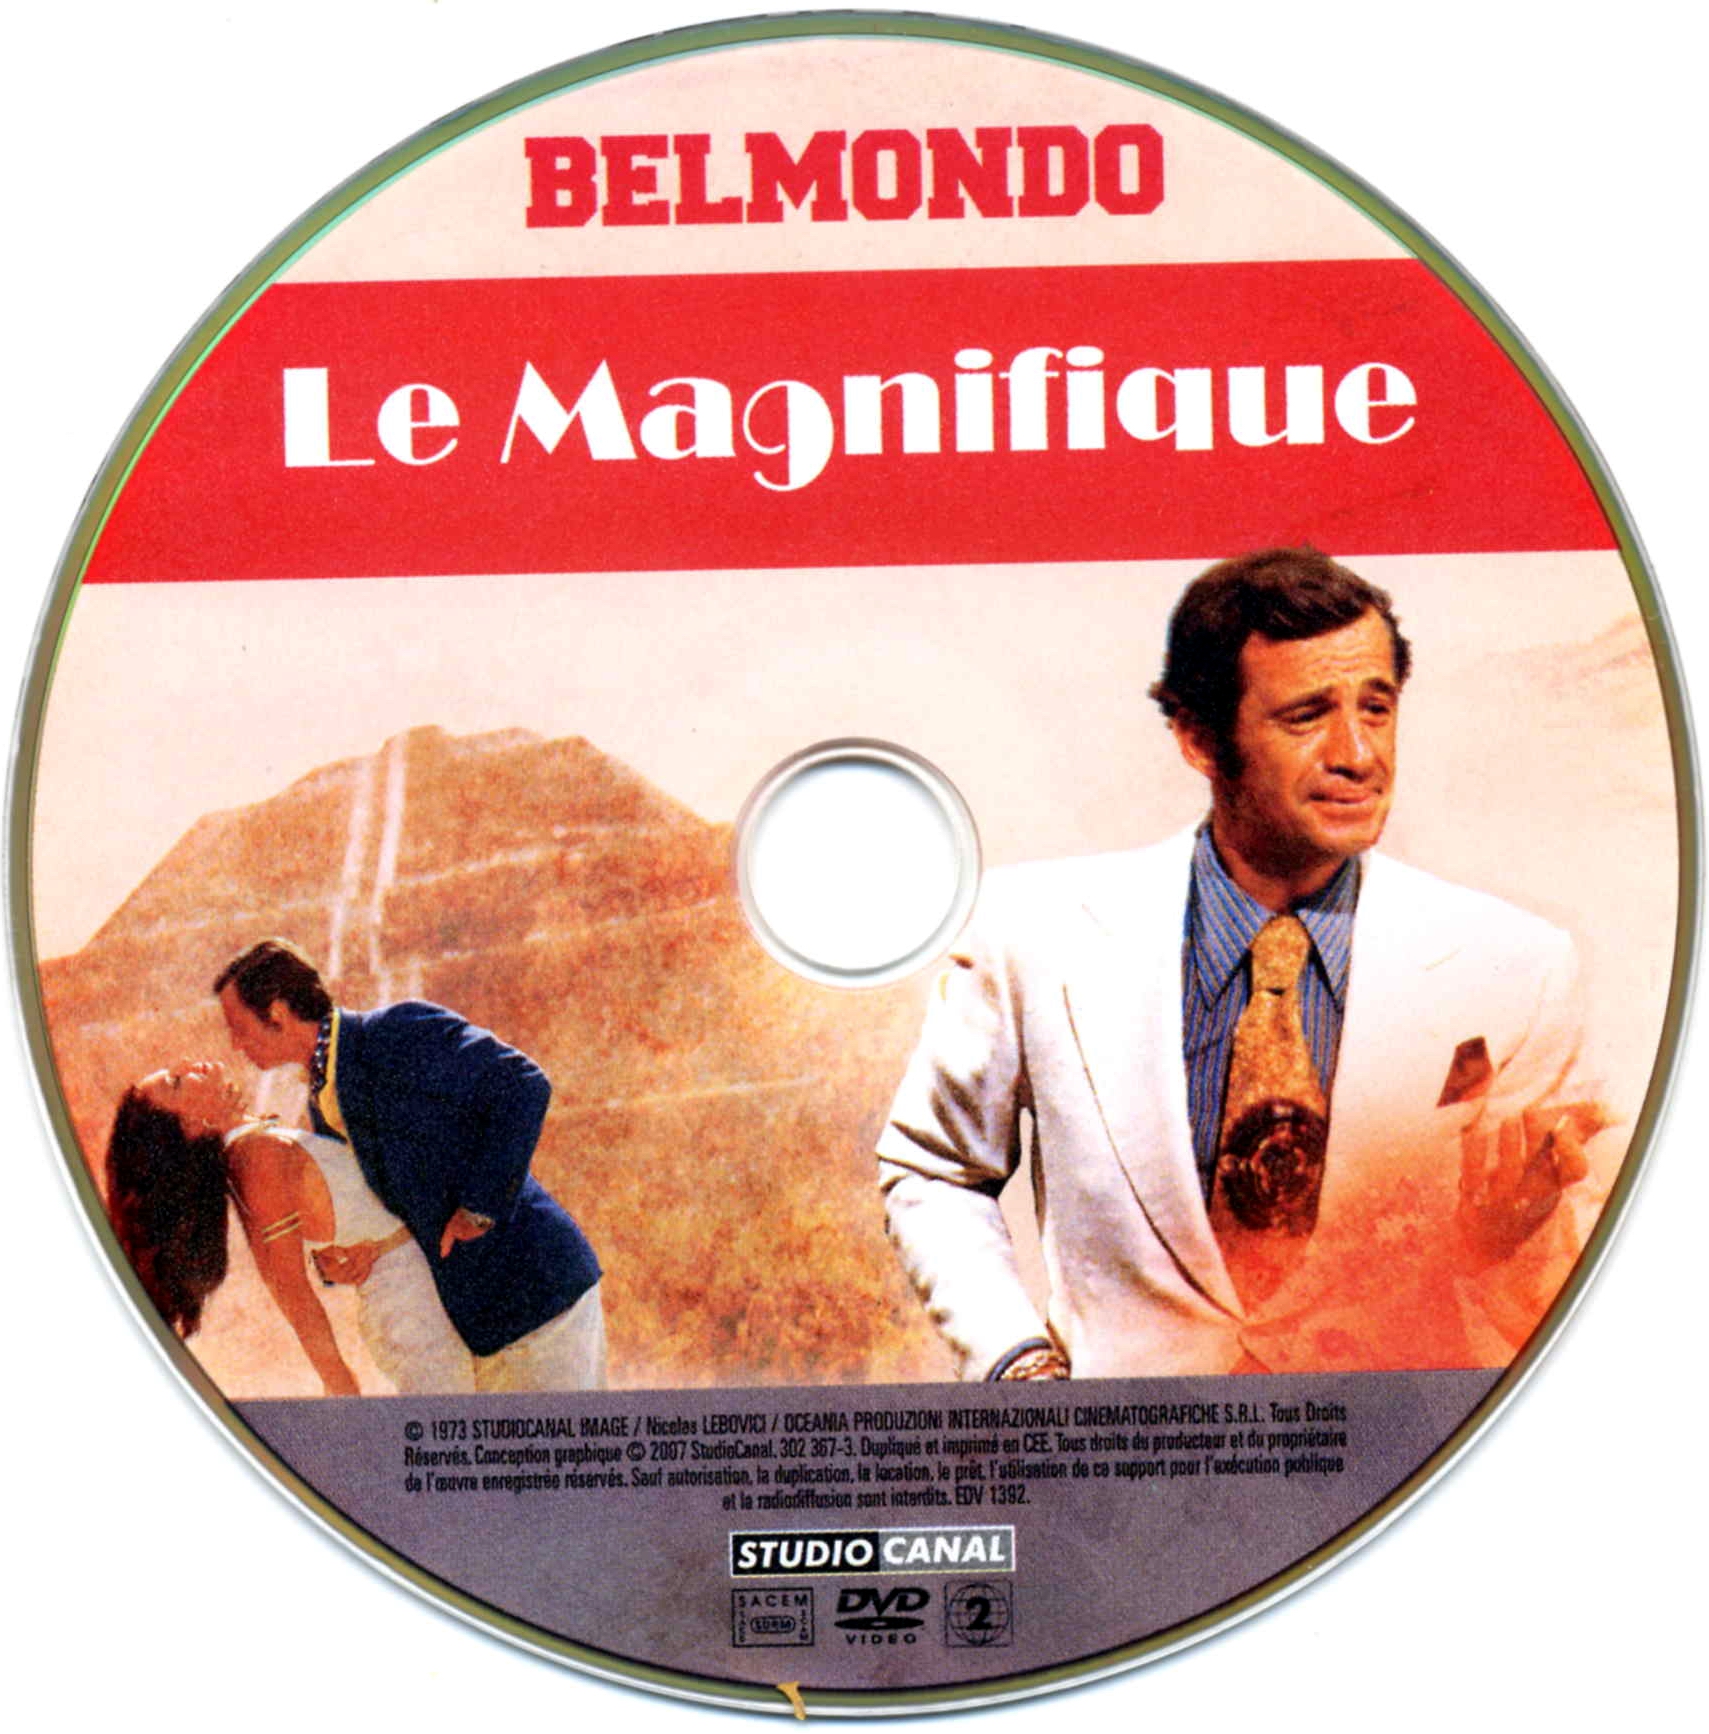 Le magnifique (Belmondo)